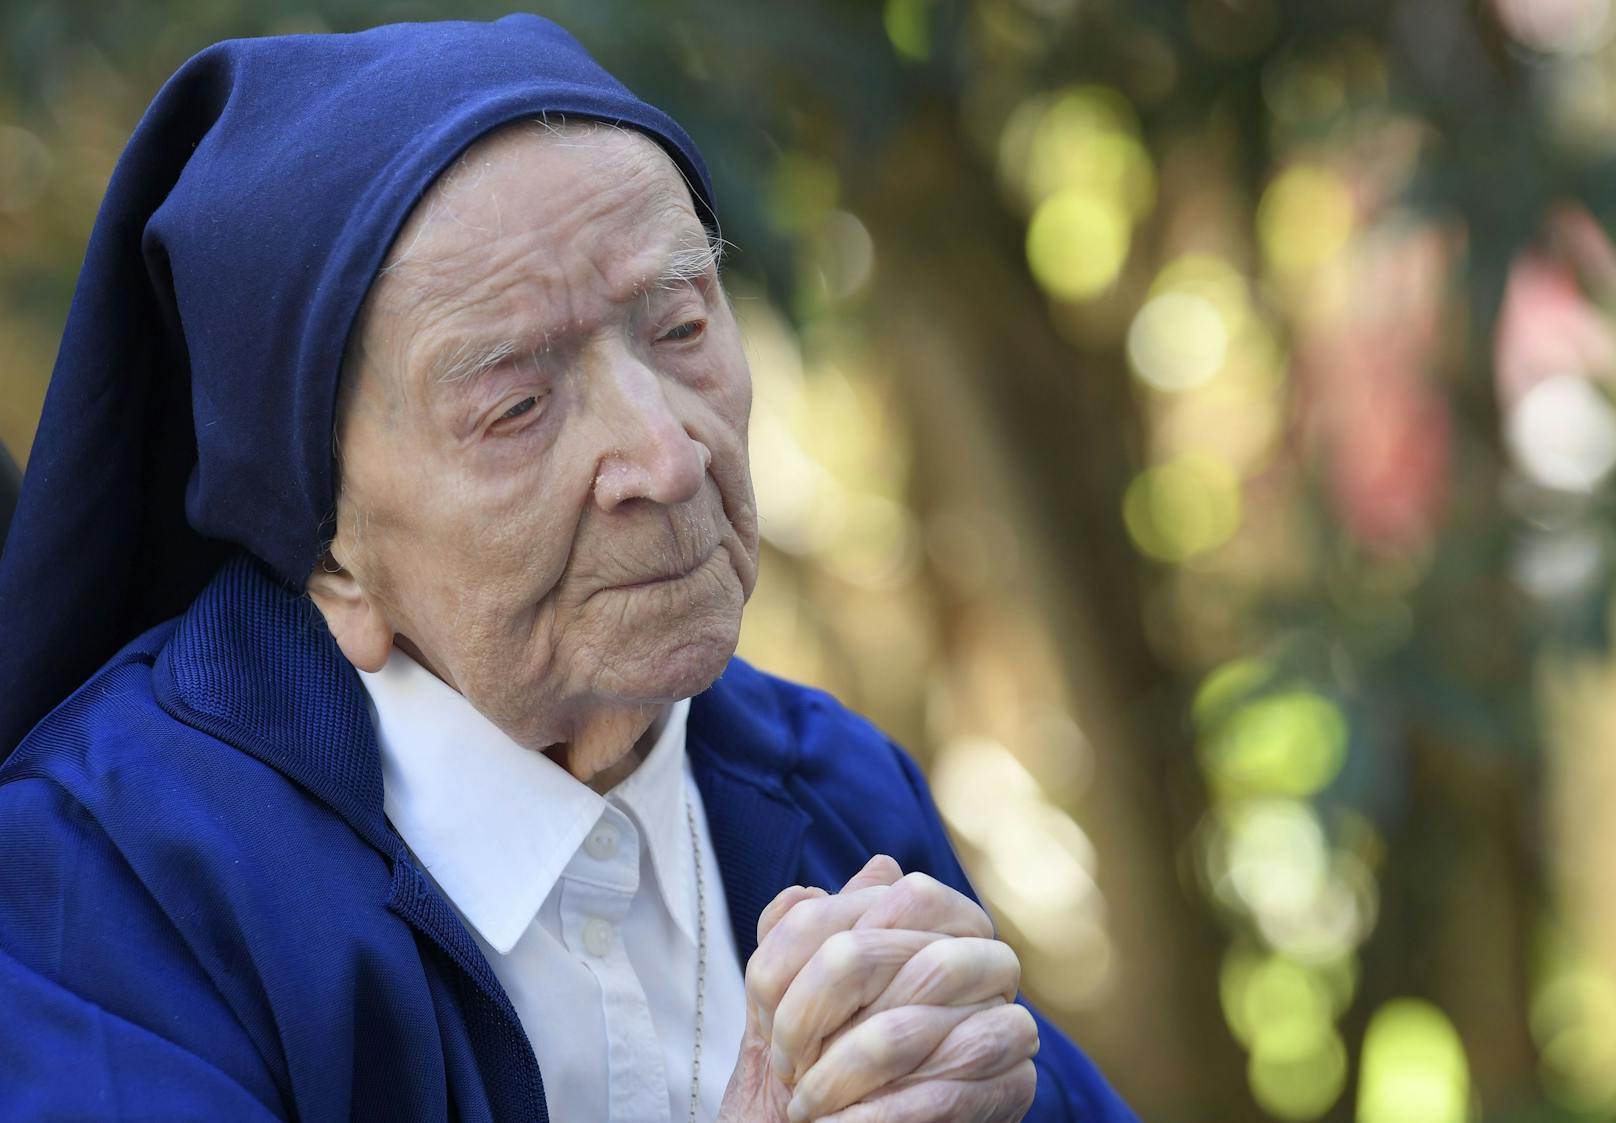 Die älteste Ordensfrau der Welt gilt seit Oktober 2017 als älteste Französin und seit Juni 2019 als älteste Europäerin.